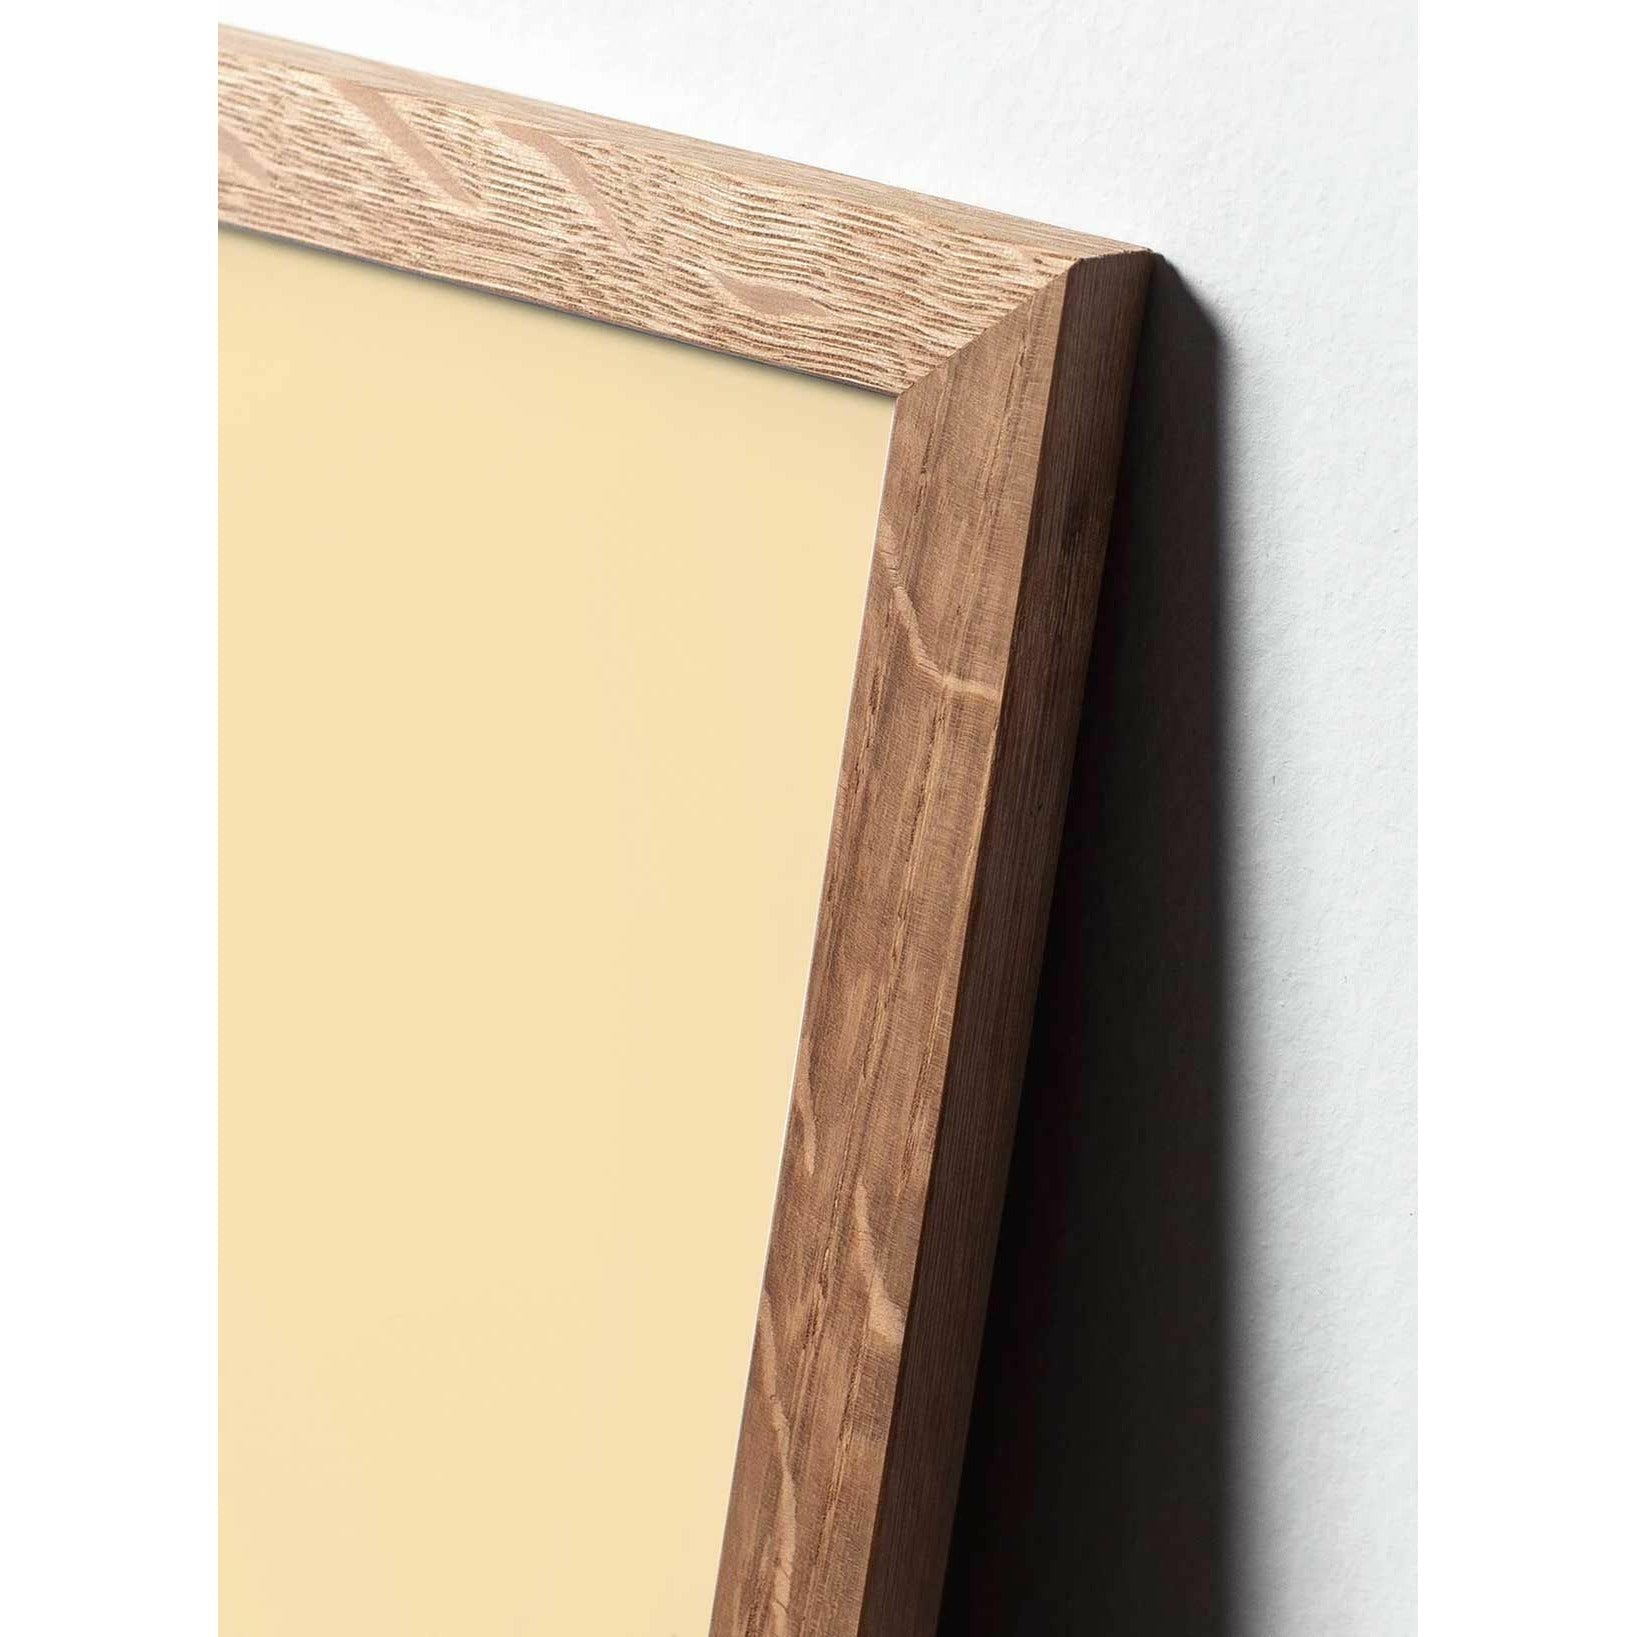 Pomysły plakat linii stożkowej, rama wykonana z jasnego drewna 70x100 cm, białe tło